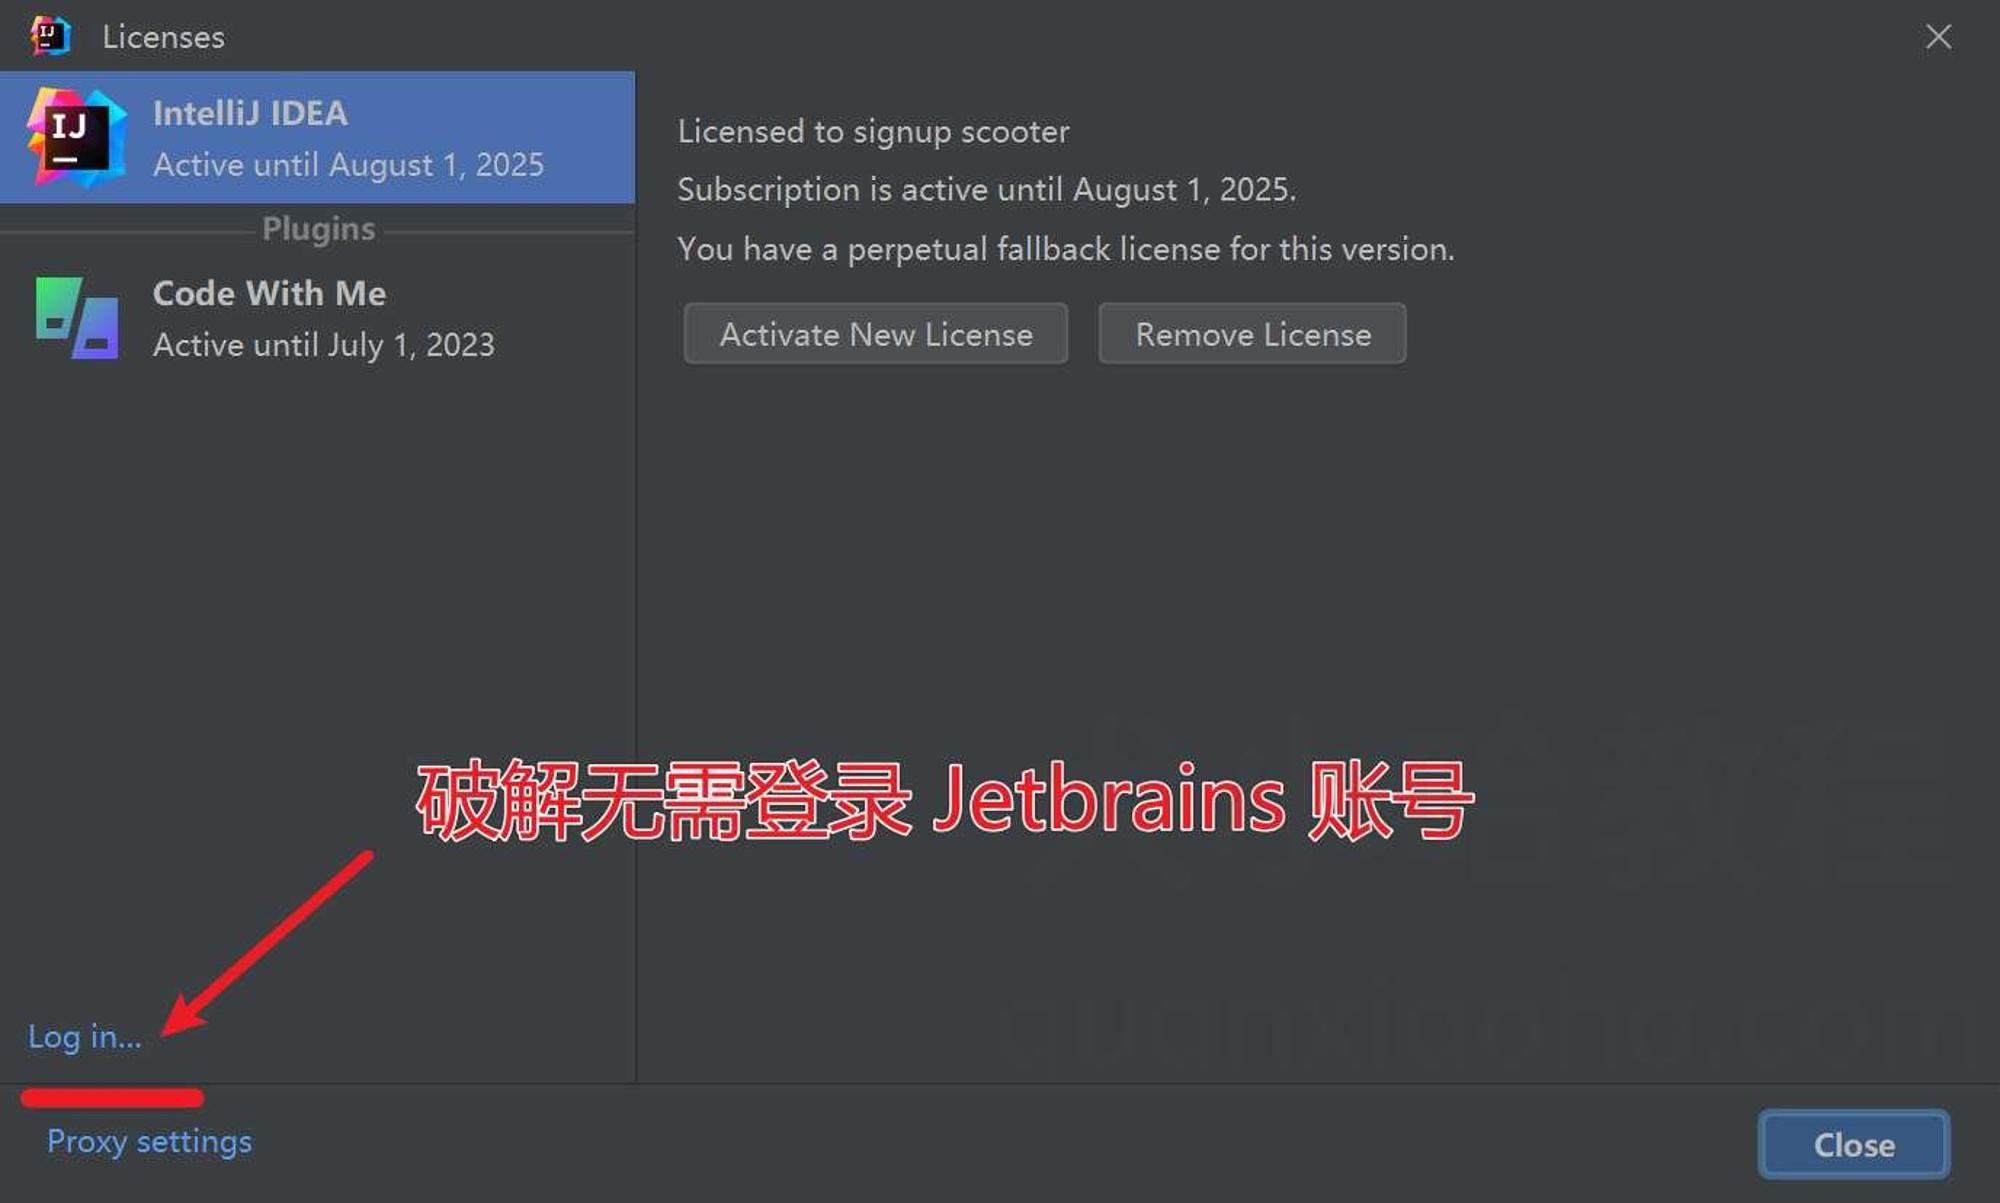 使用破解补丁，无需登录 JetBrains 账号